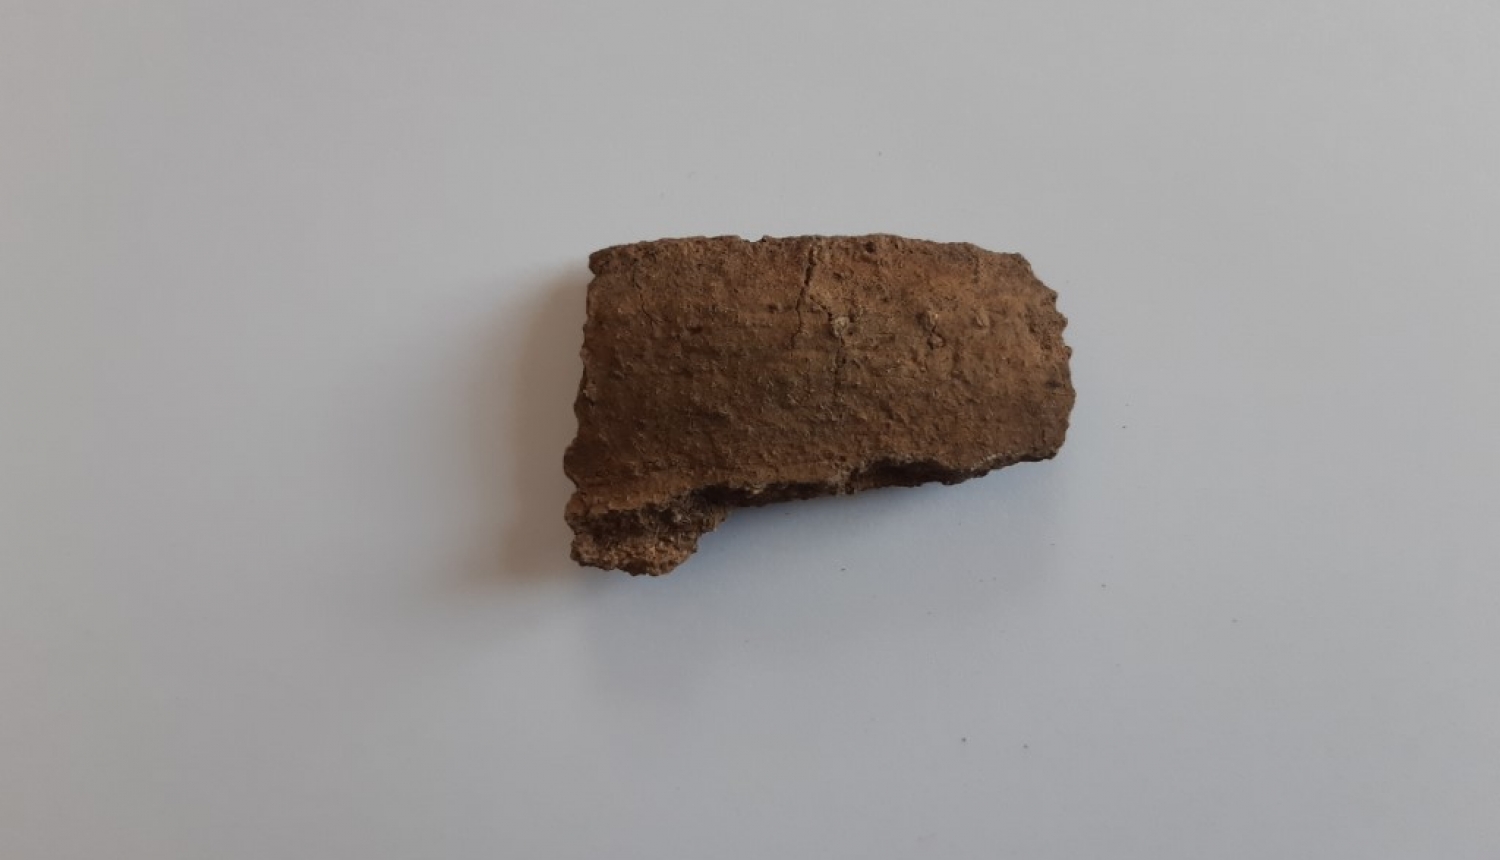 Viļakas muzejā lekcija “Loginu senkapu 2019.gada izpētes rezultāti”